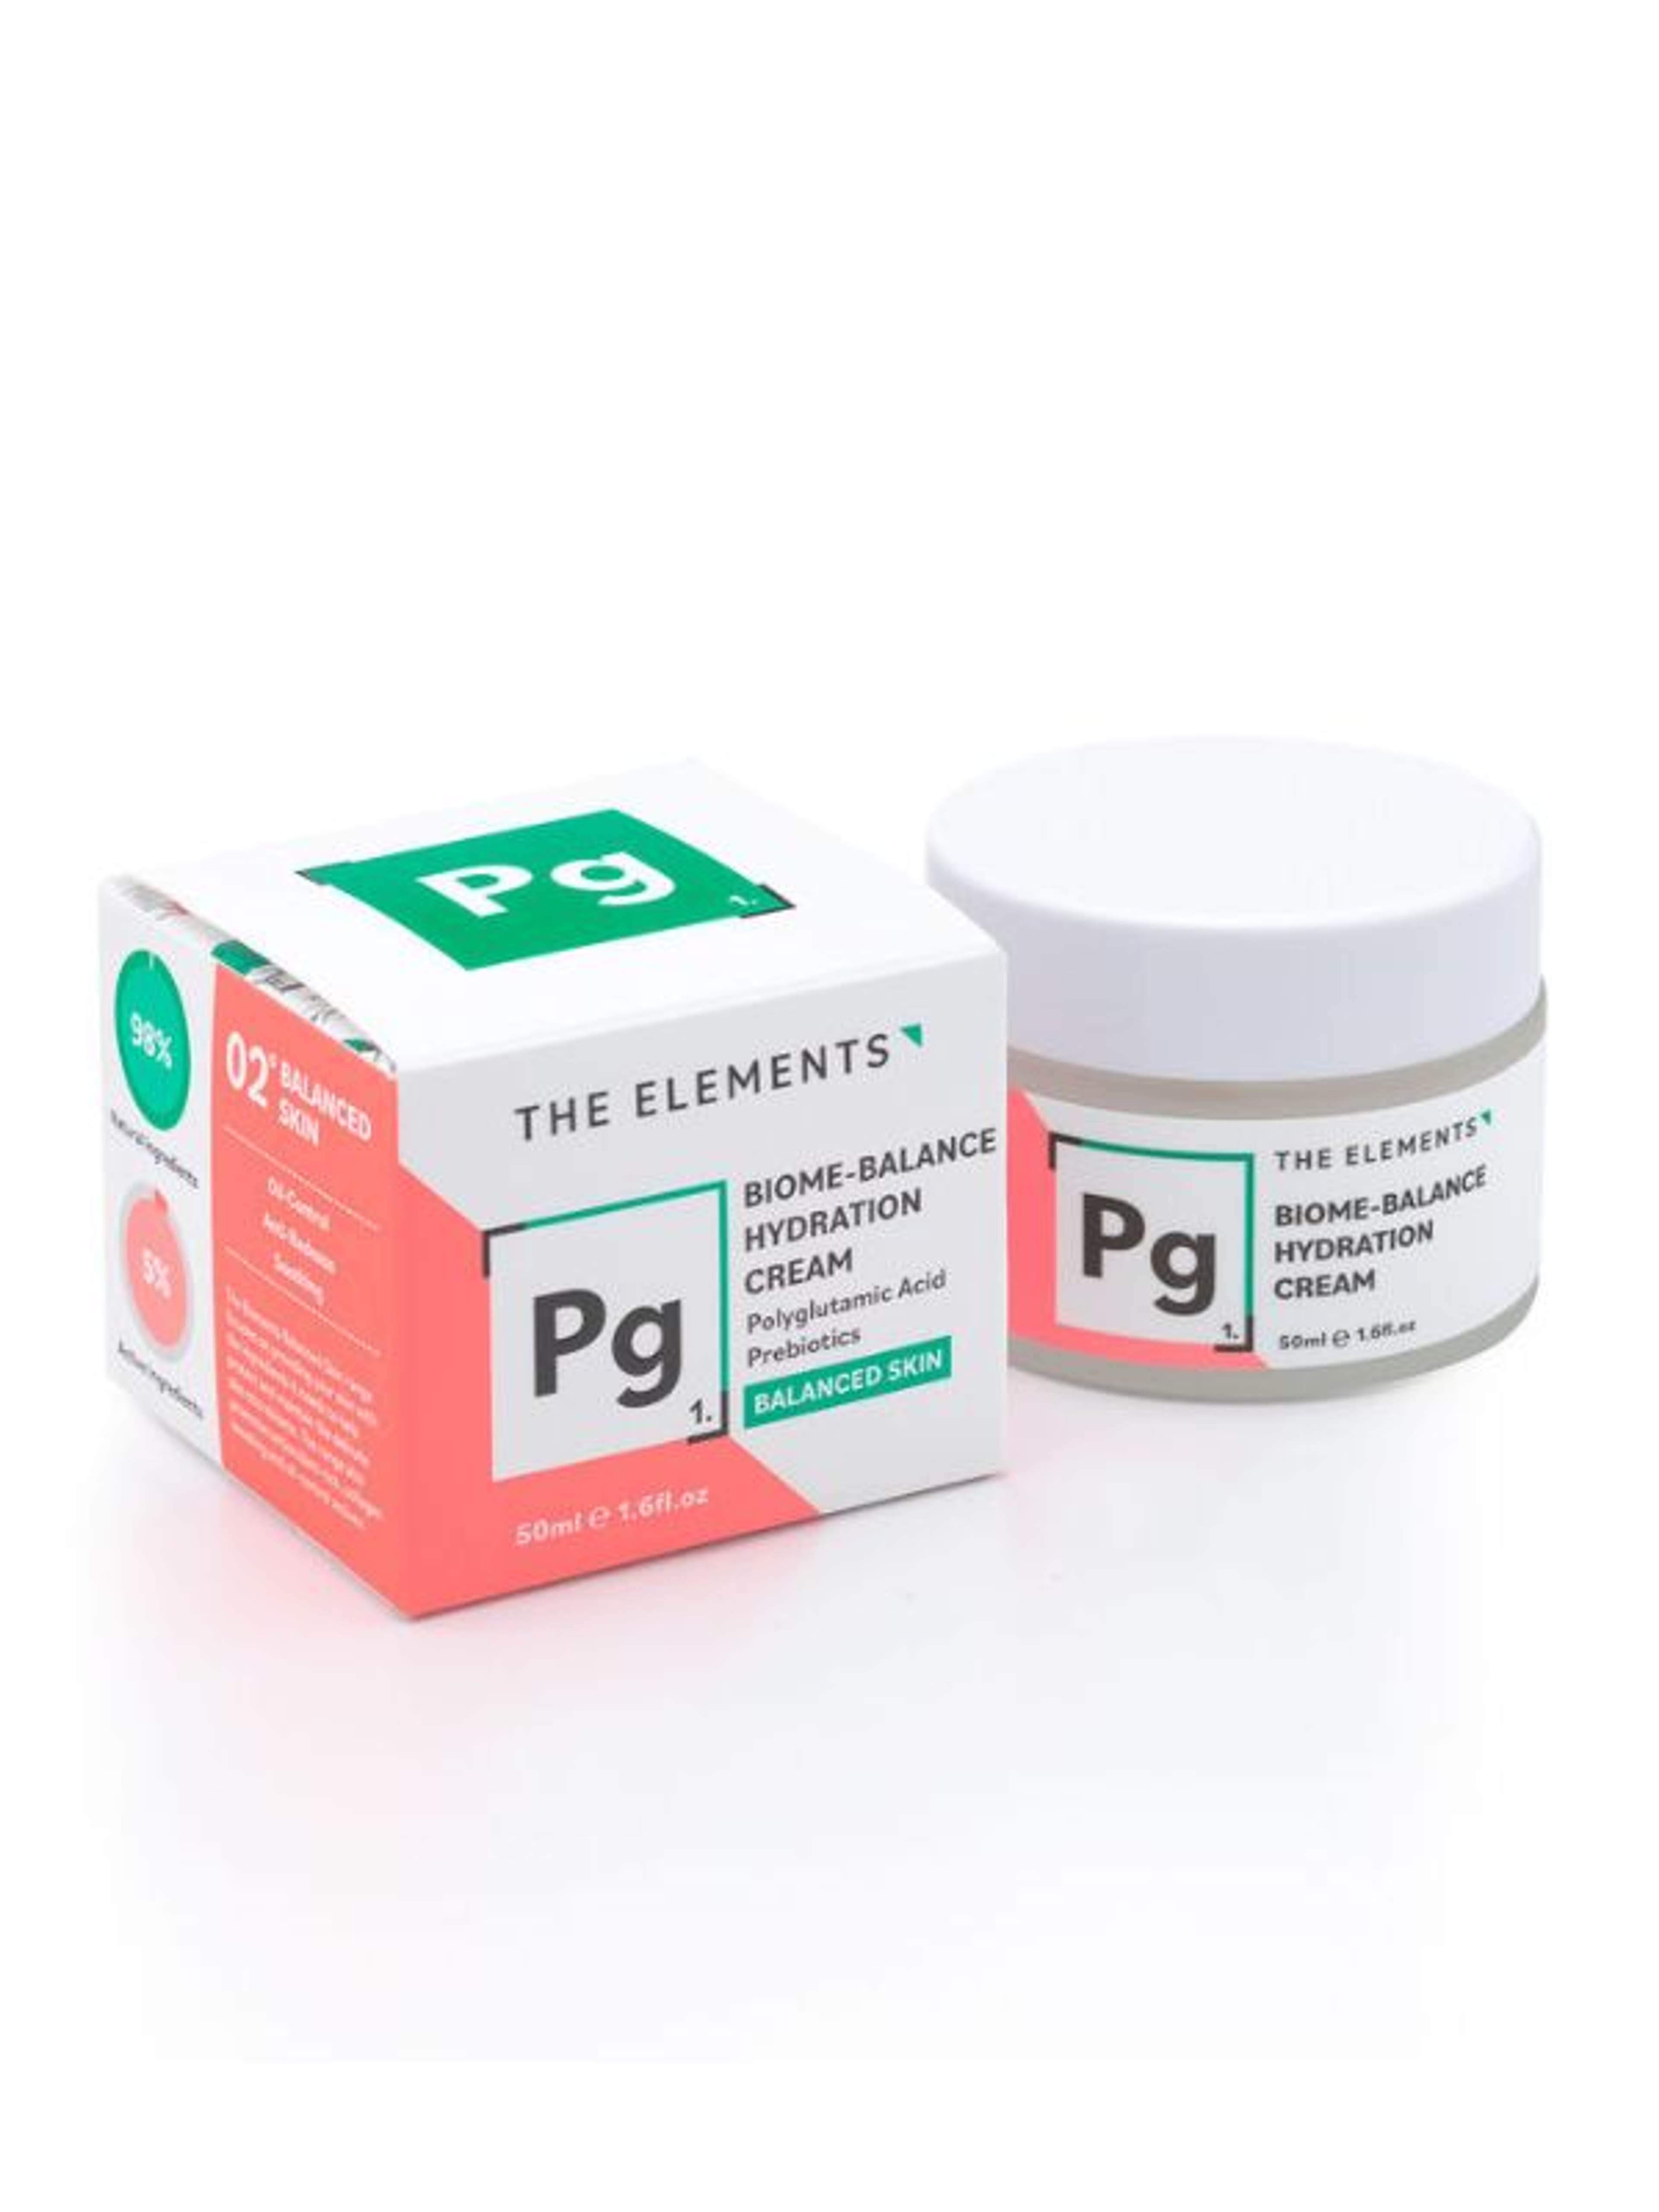 The Elements Balanced Skin hidratáló krém - 50 g-3